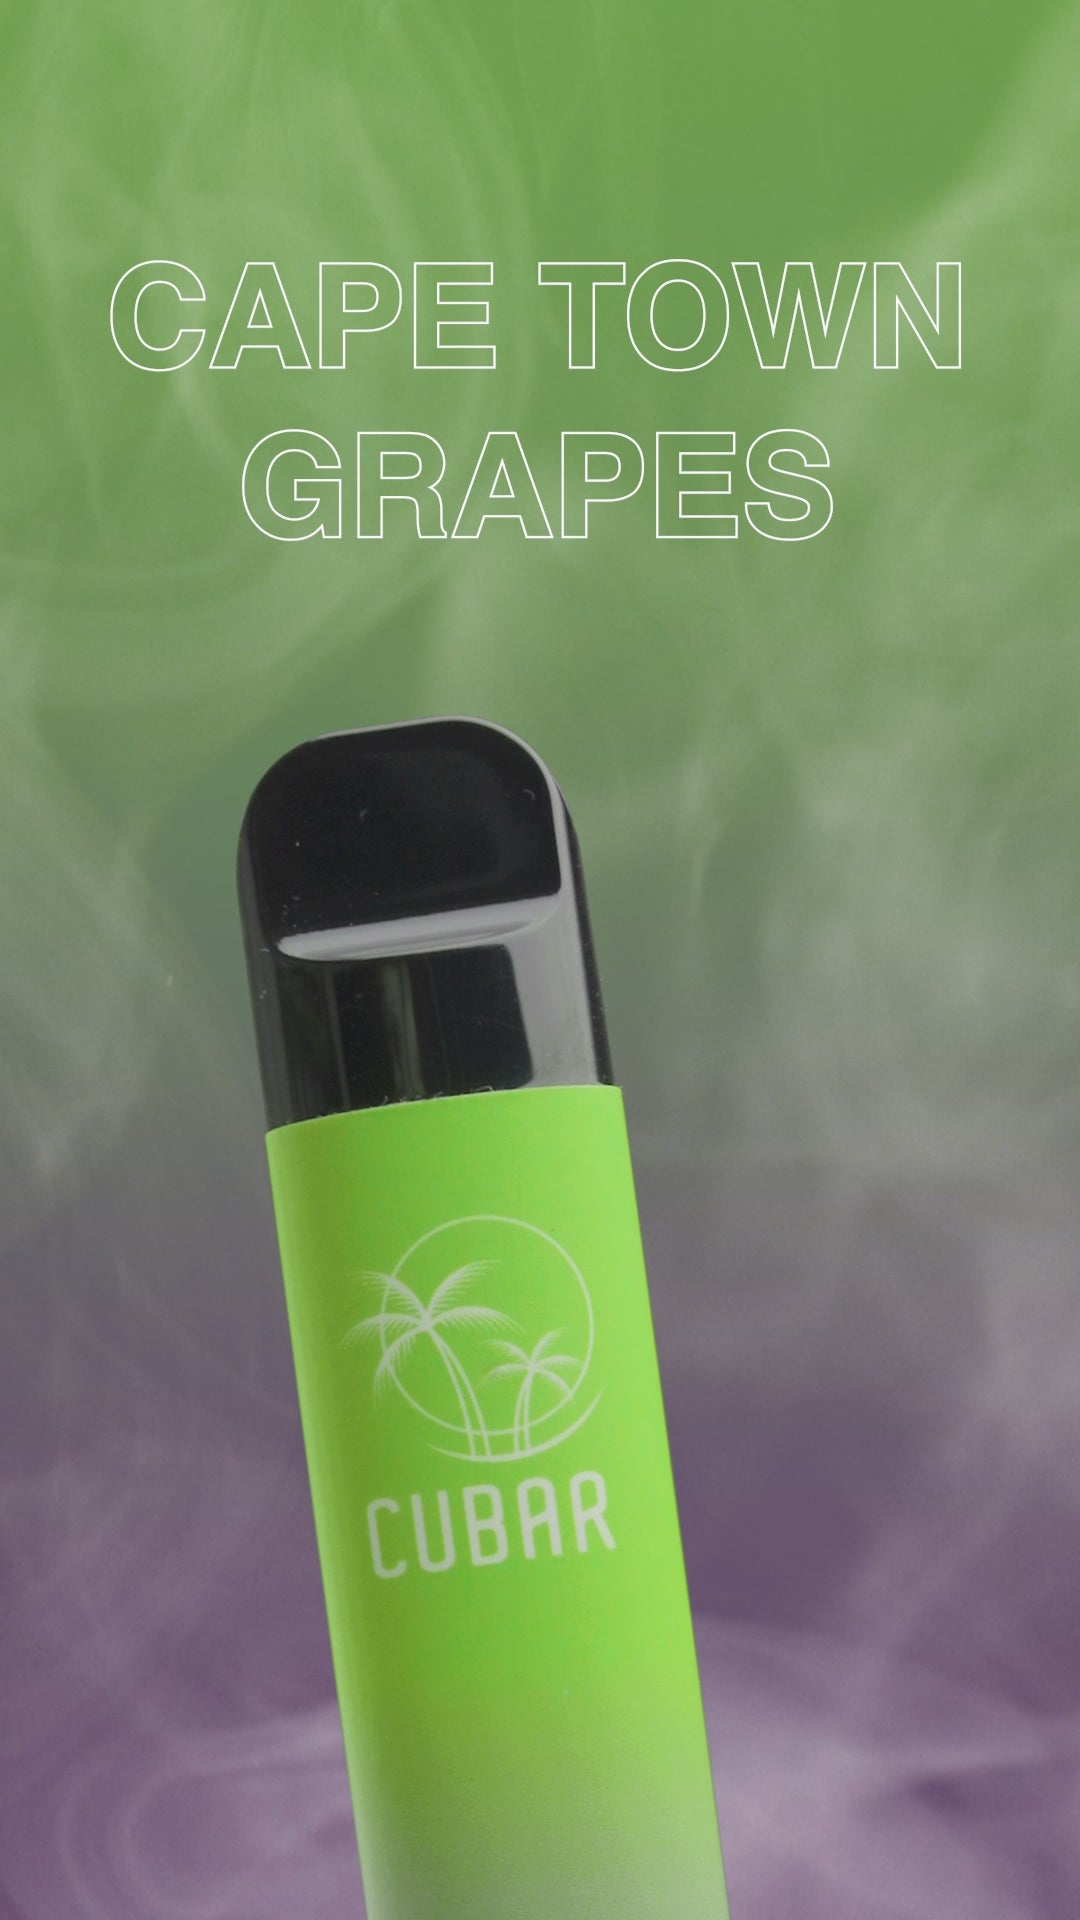 Cubar Club Cape Town Grape Vape Stick Pen Einweg E-Zigarette Dampfen Werbevideo Video